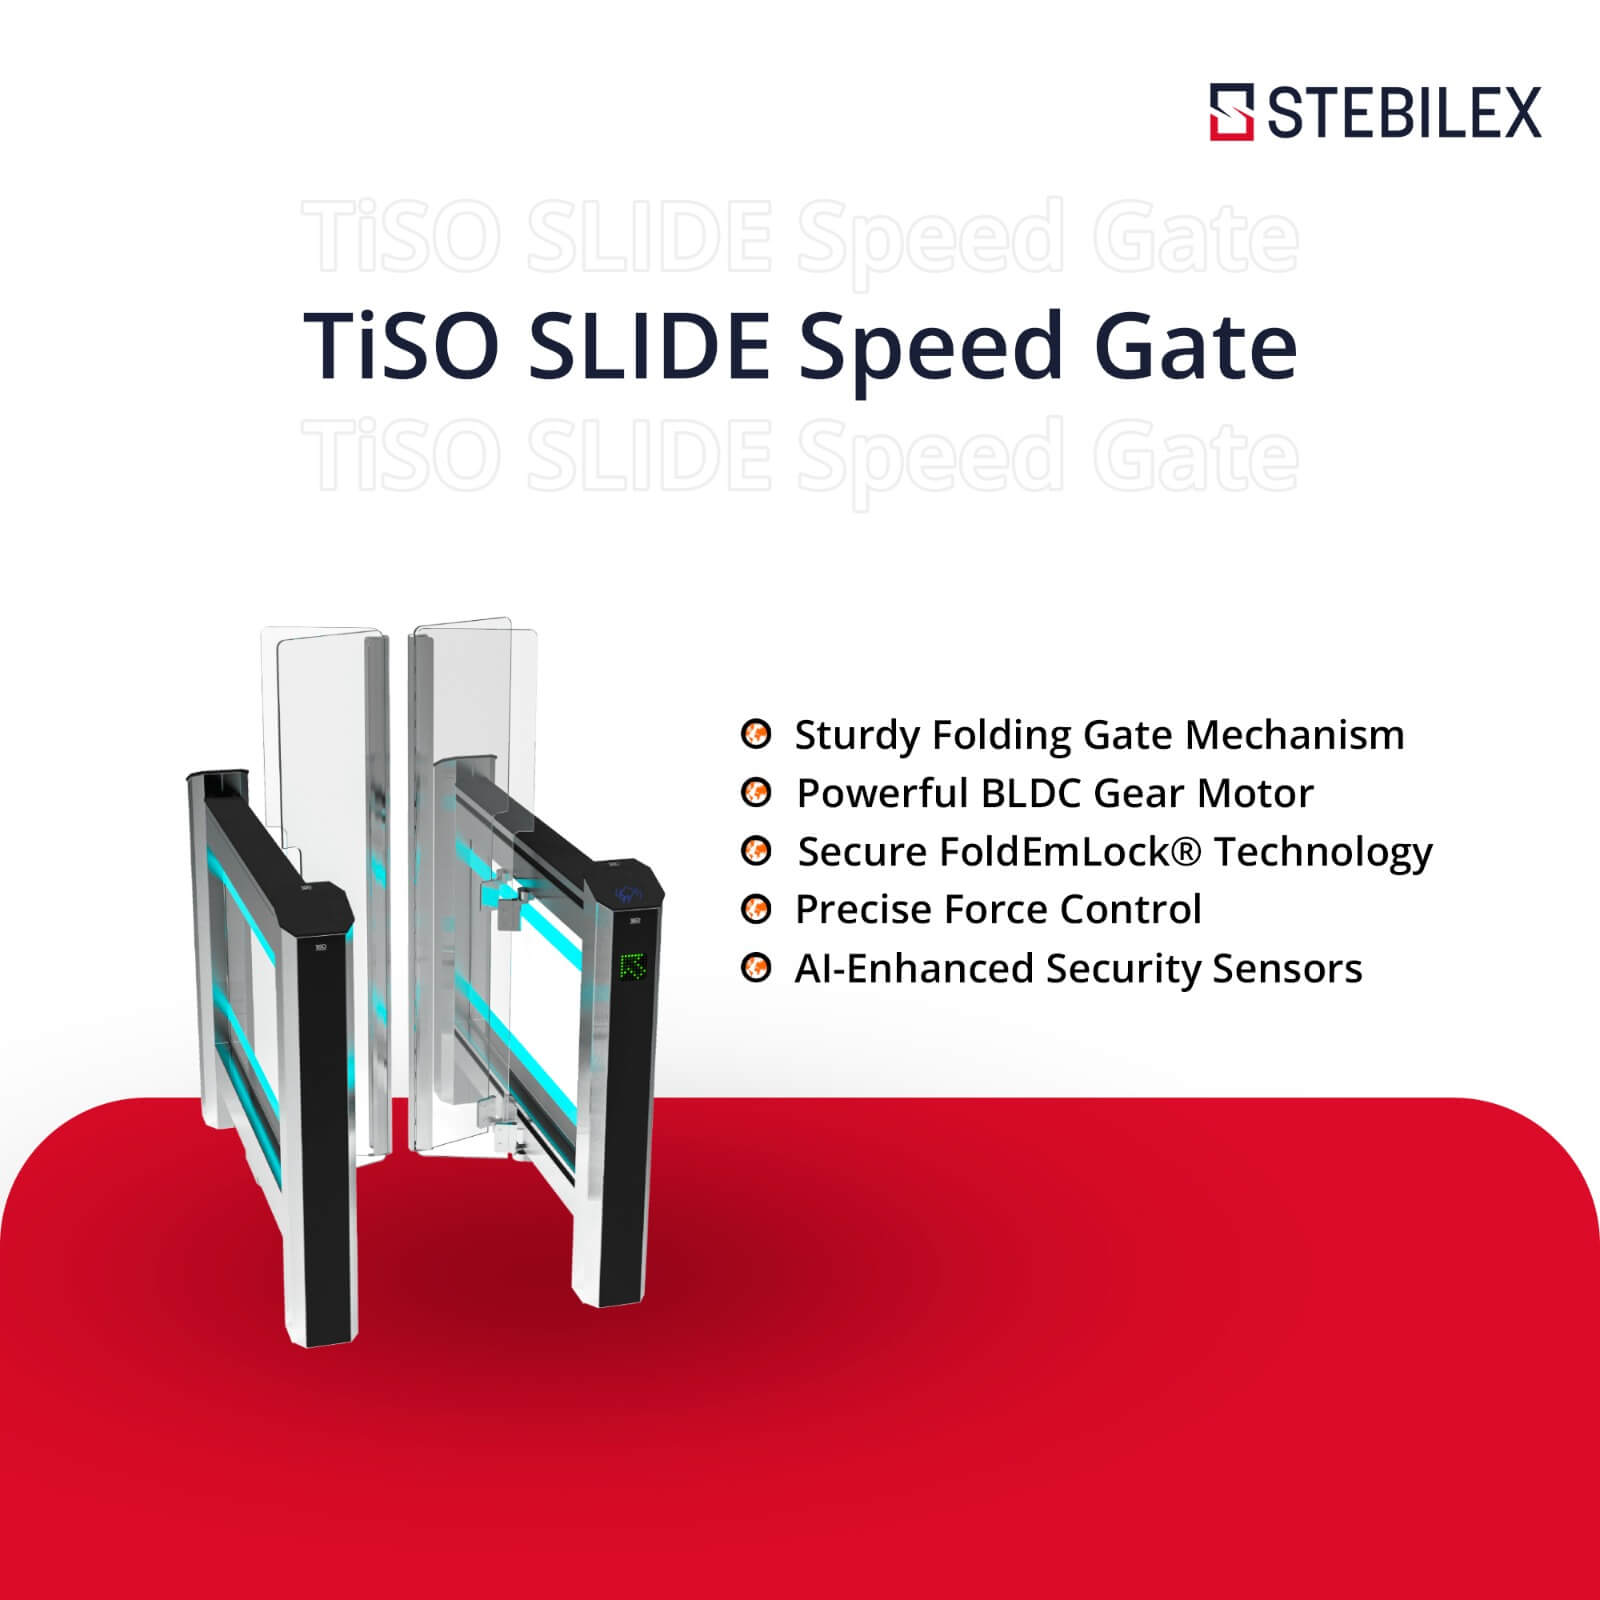 TiSO SLIDE Speed Gate